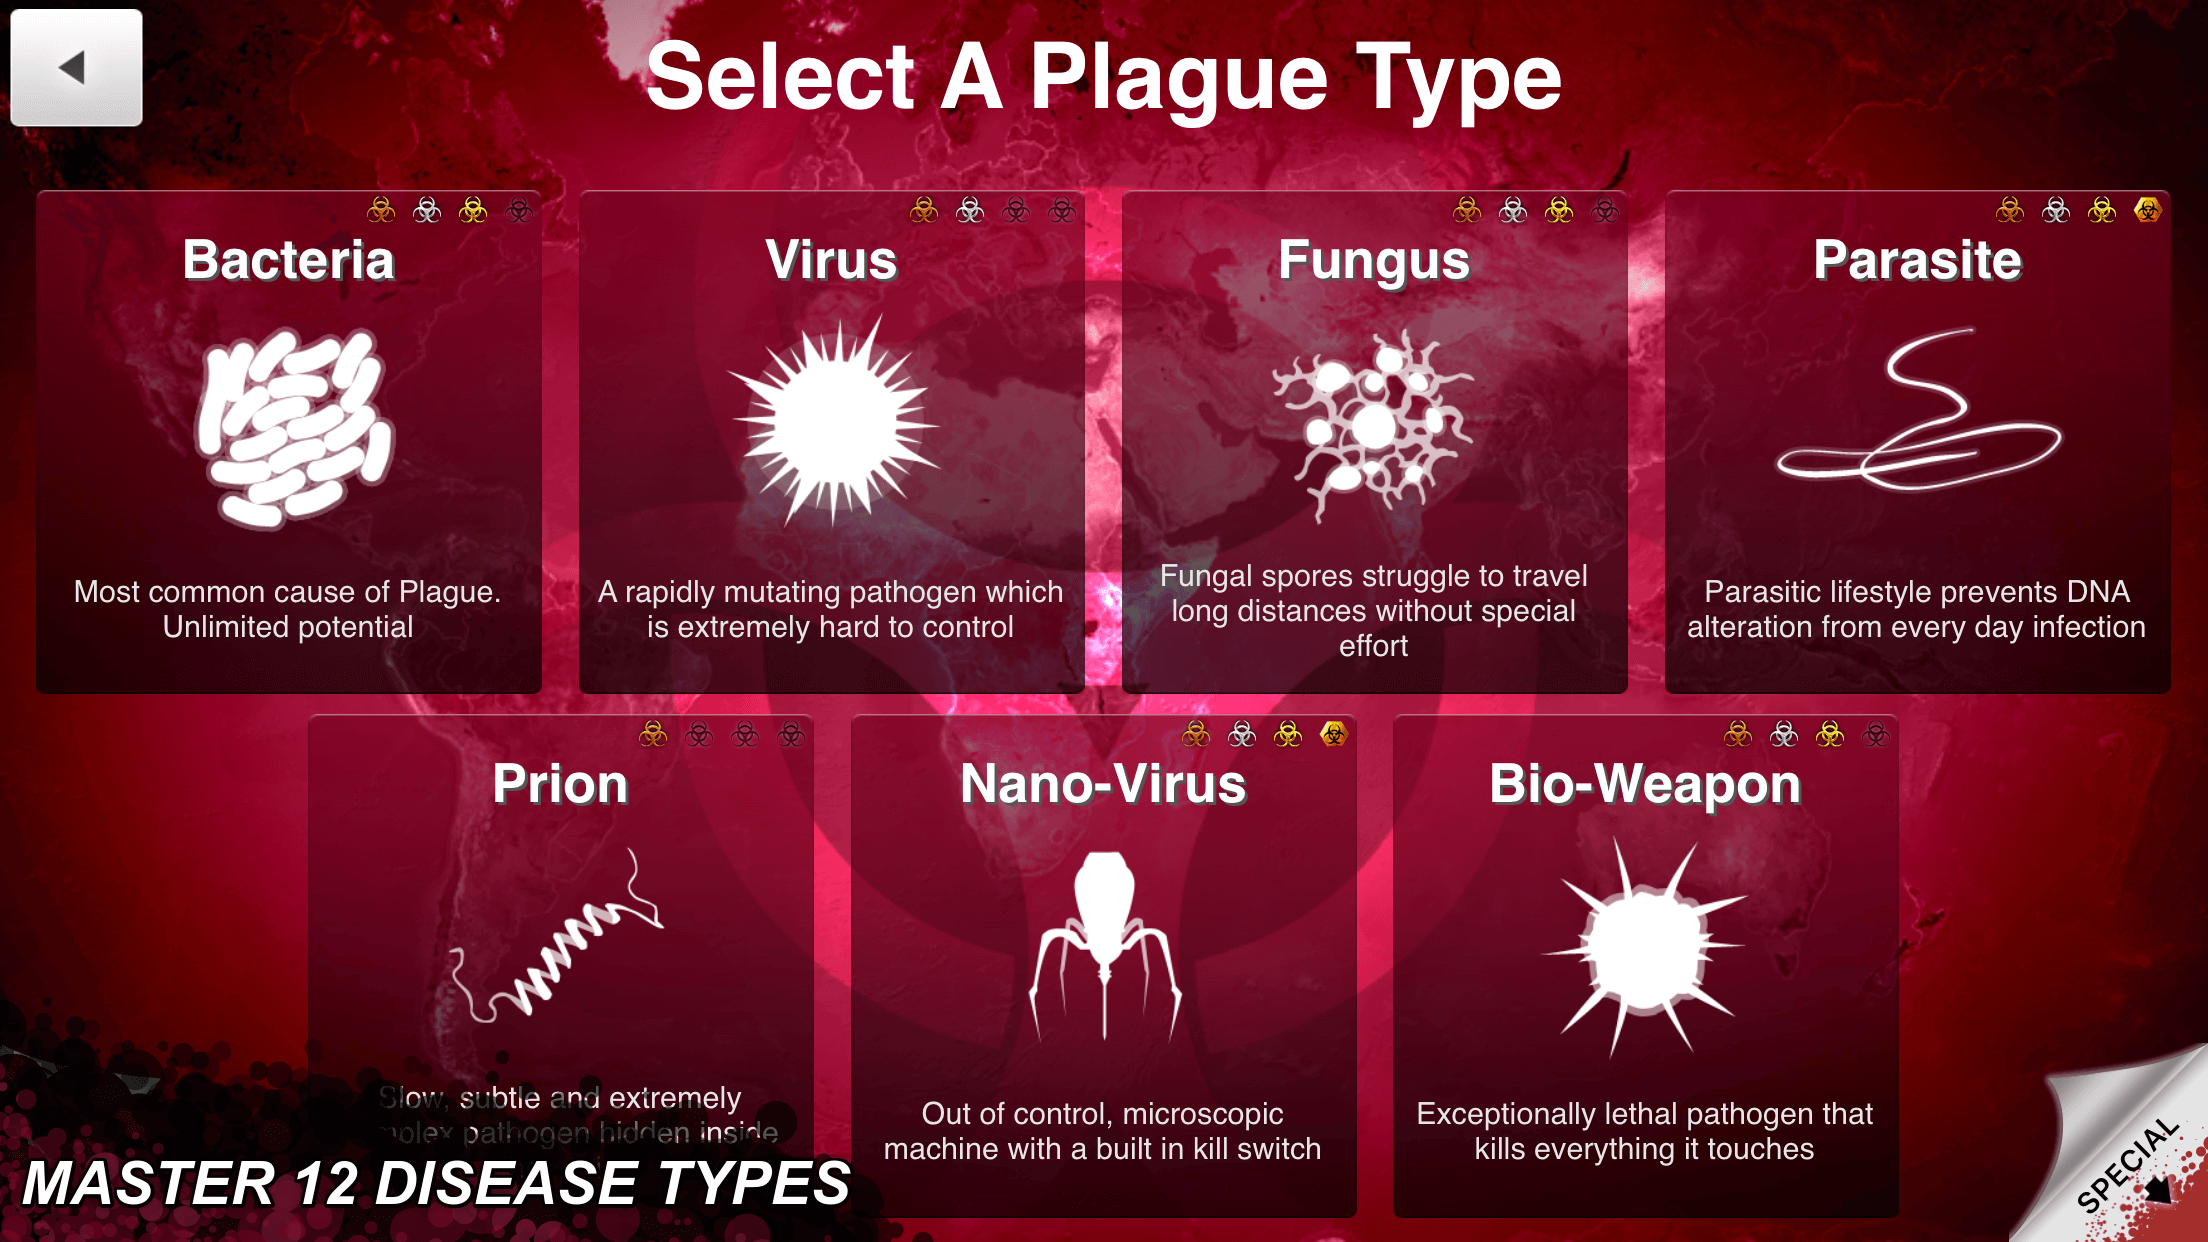 Captura de pantalla de Plague Inc.